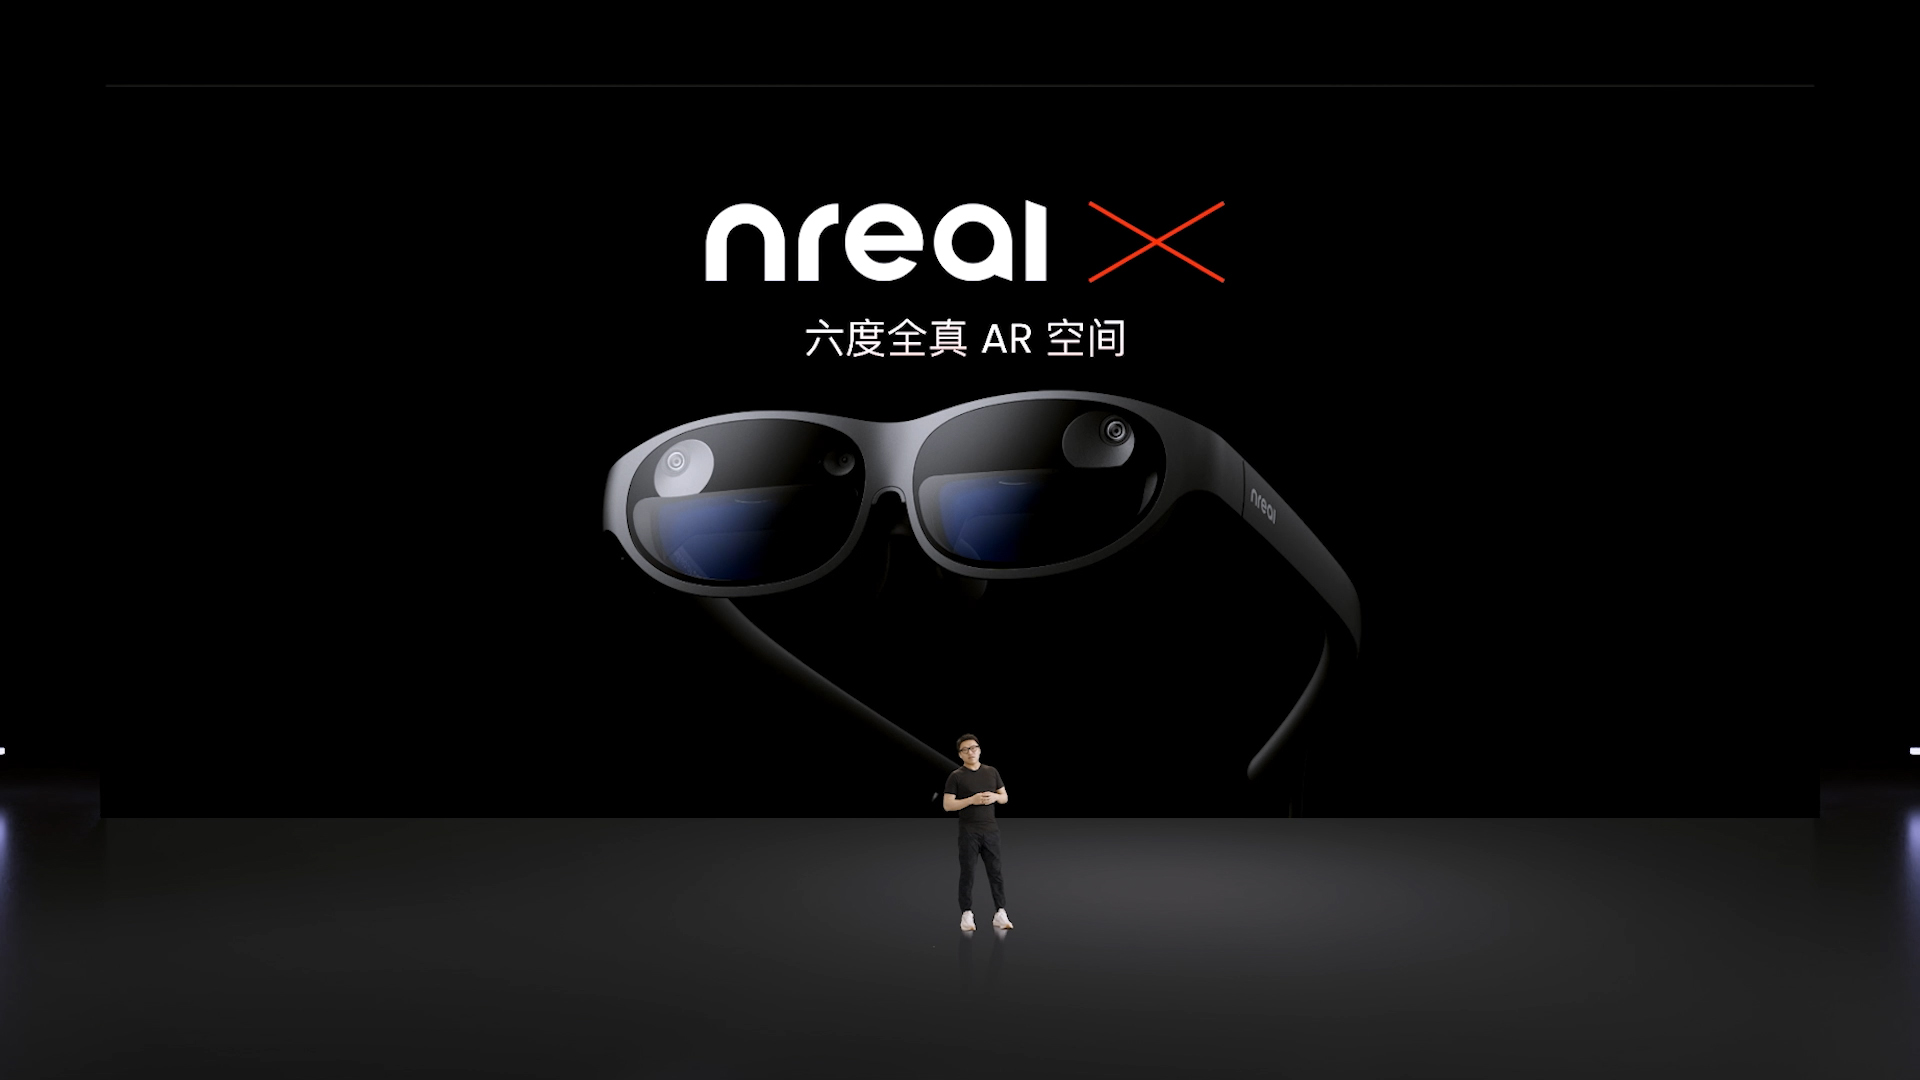 Nreal“惊鸿锐影”光学引擎2.0：空间视网膜级显示三项莱茵权威护眼认